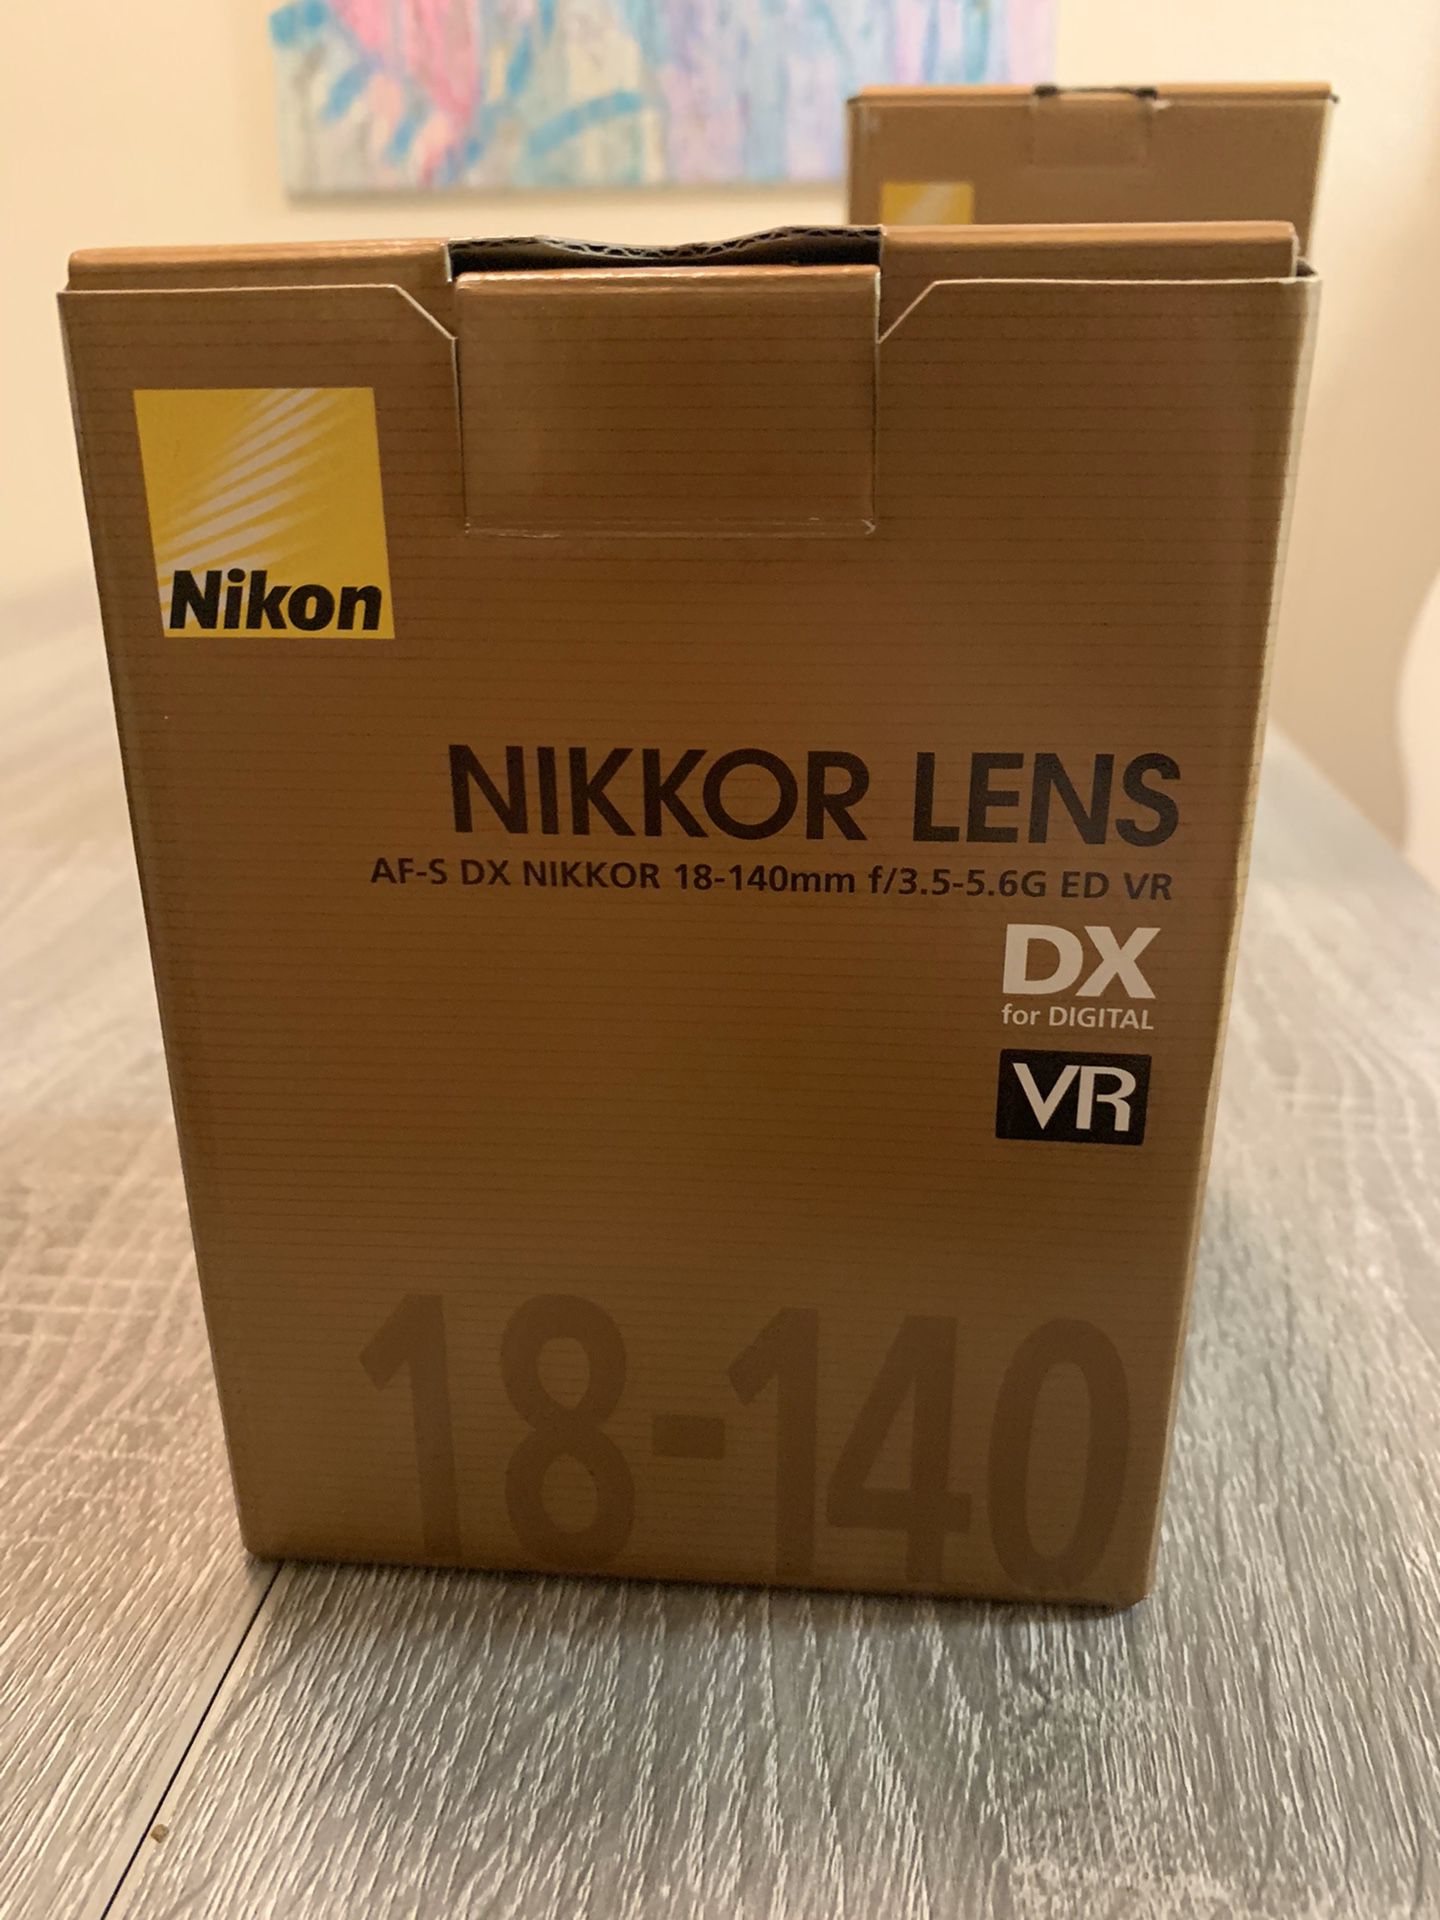 Nikon Nikkor Lens DX 18-140mm f/3.5-5.6G ED VR